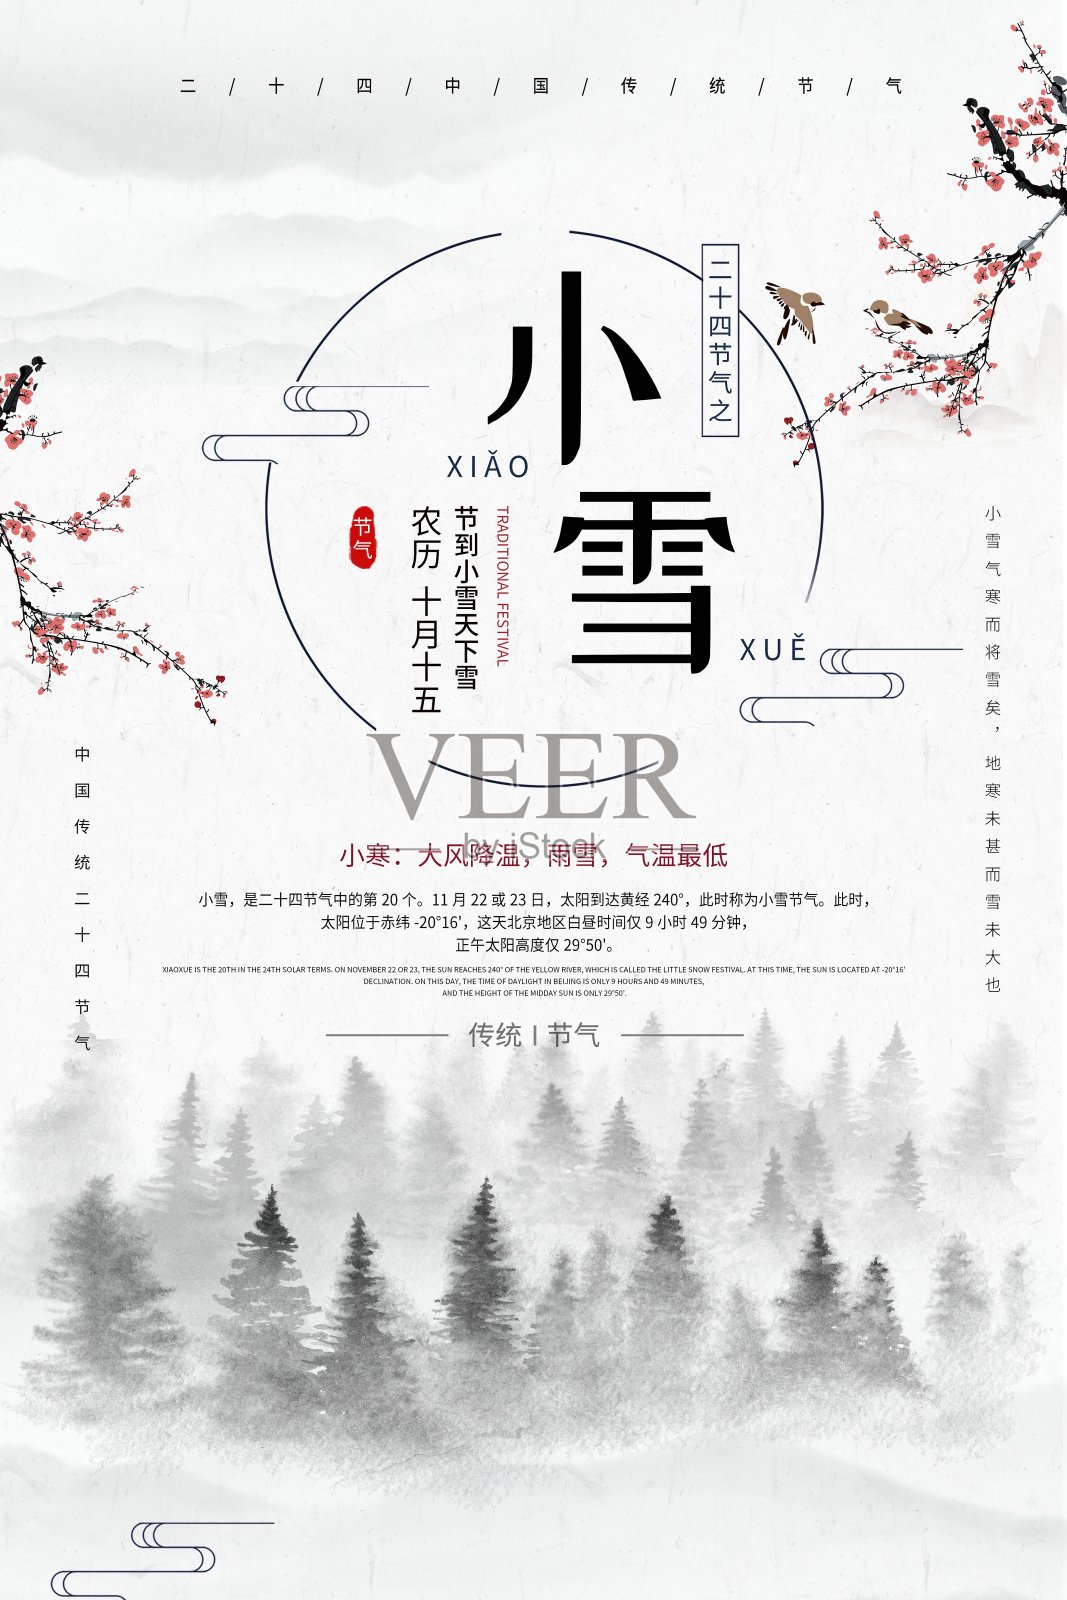 中国风小雪二十四节气传统海报设计模板素材